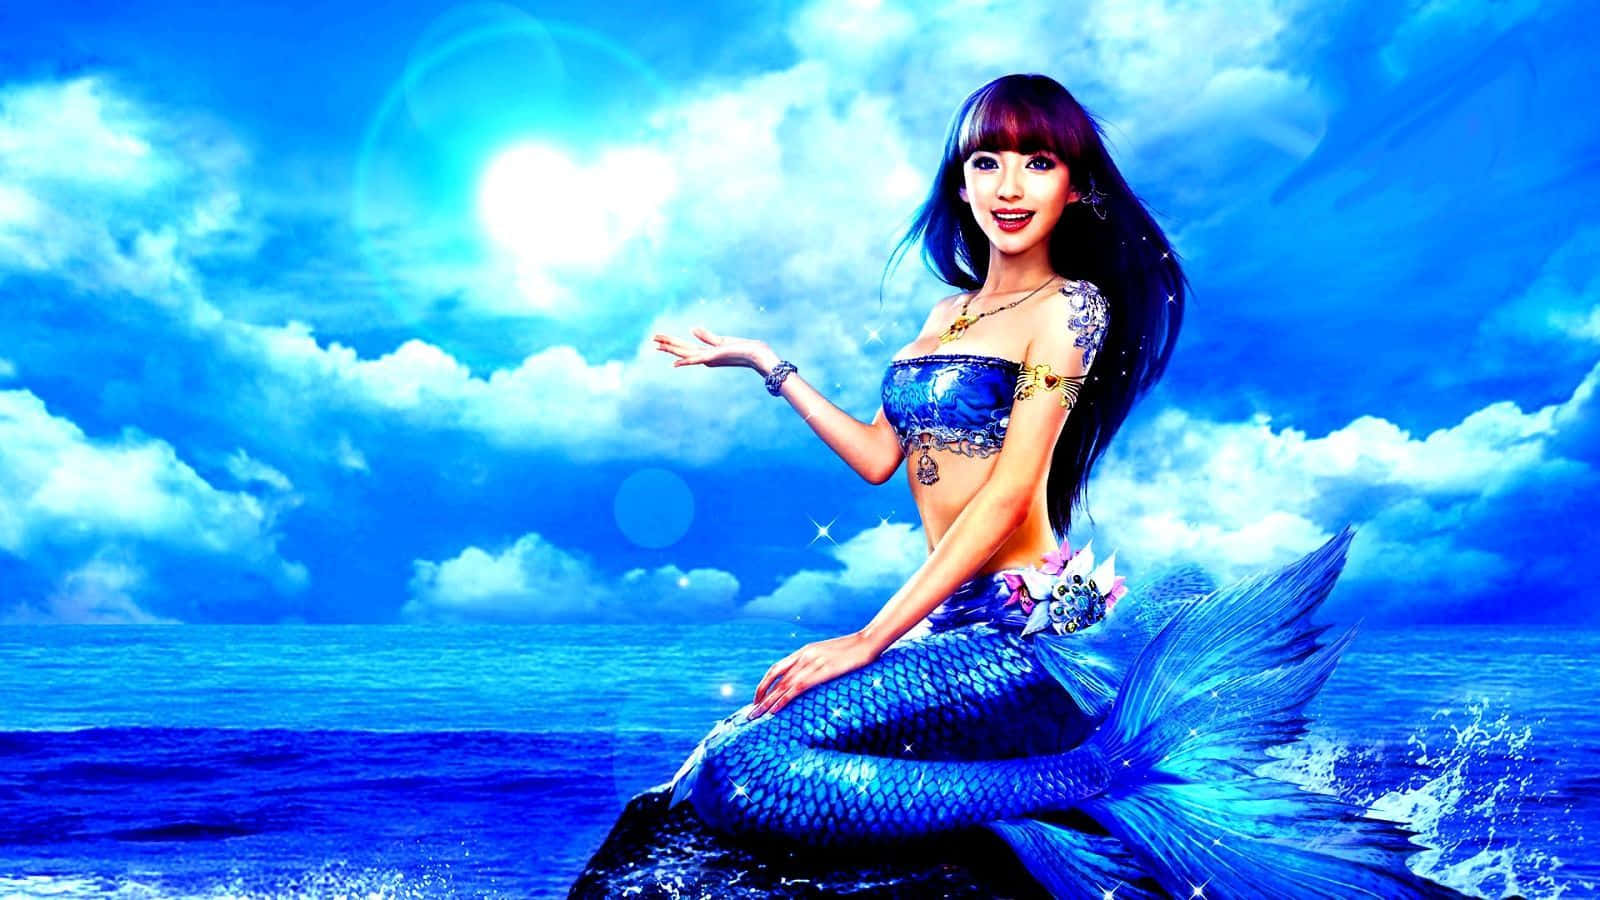 Beautiful Bright Blue Mermaid Wallpaper